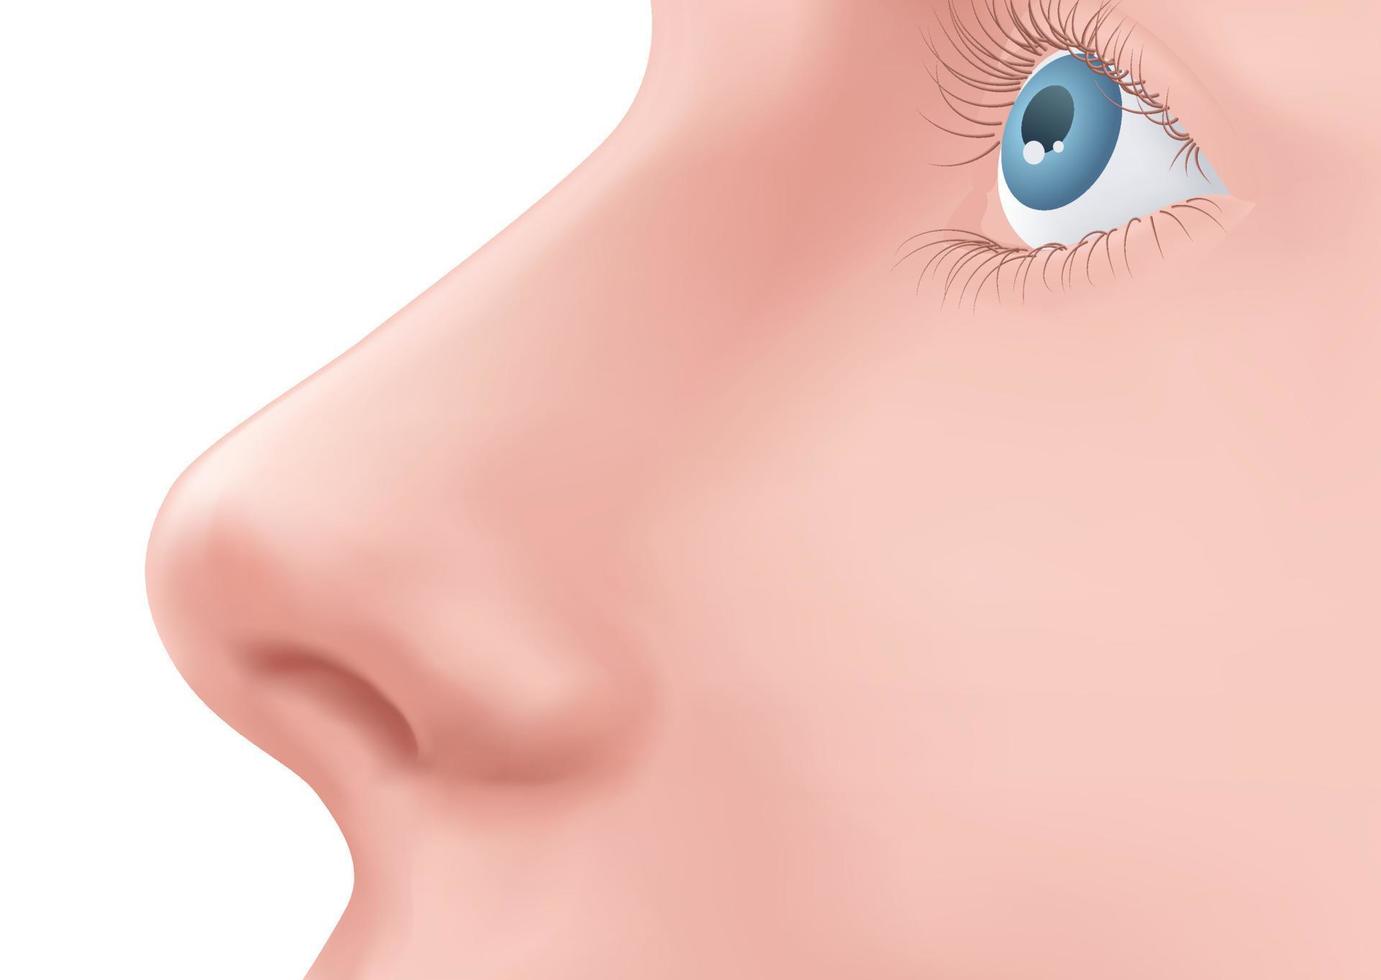 profil se mänsklig näsa och blå öga med ögonfransar på de ansikte realistisk illustration för medicin, isolerat på vit bakgrund design vektor. näsplastik exempel. kropp del för biologi. vektor